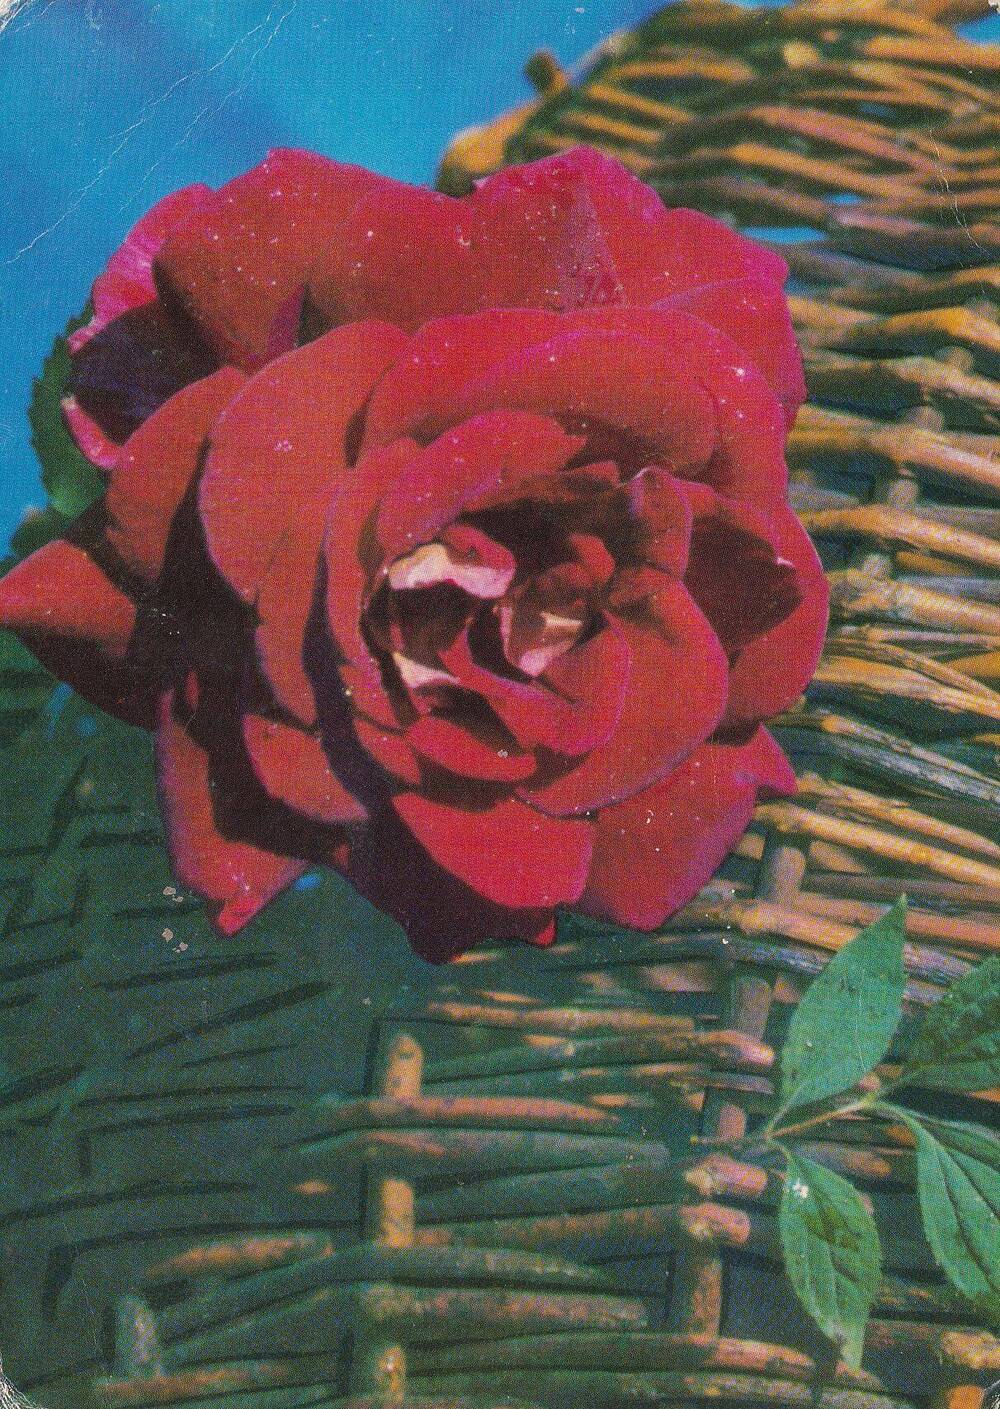 Открытка (открытое письмо). Роза на фоне корзины. Фото В Германа.  Изд.: Планета. 1971 г. М.